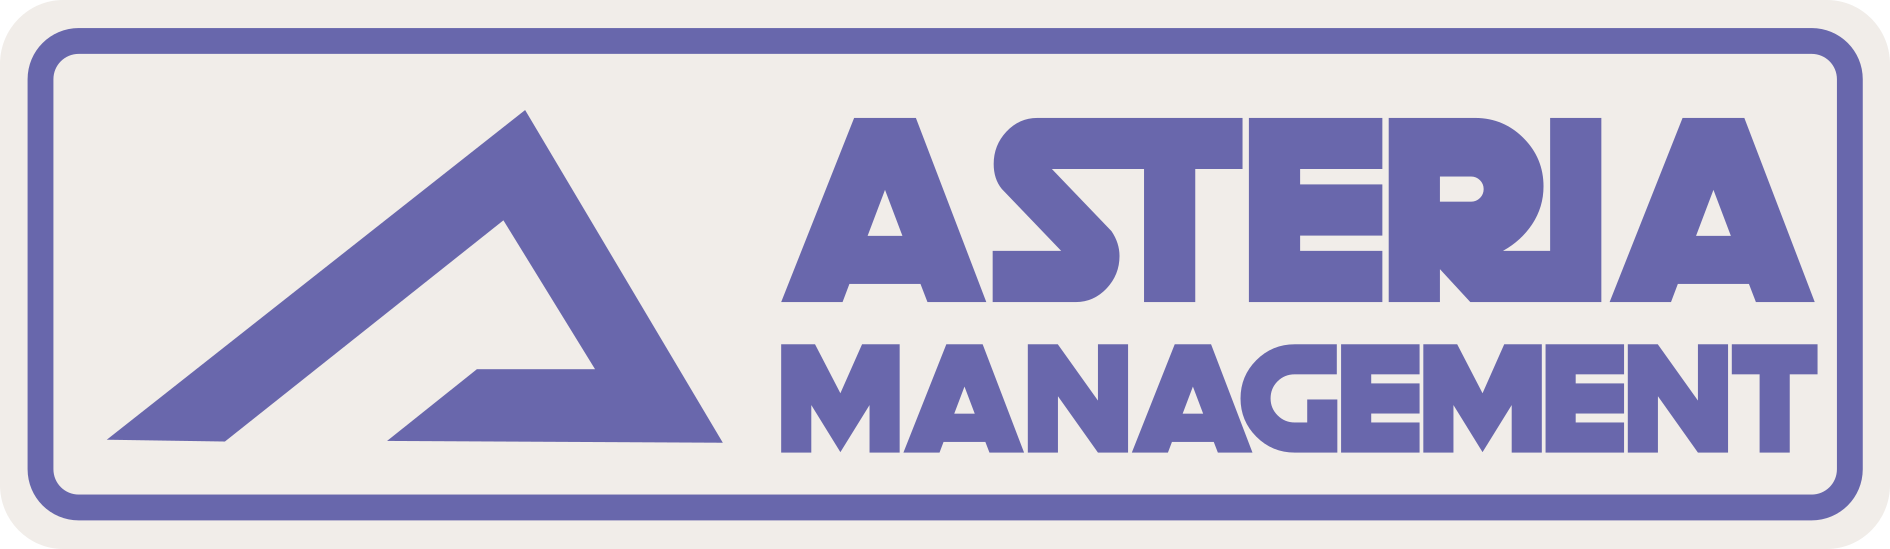 Asteria Management